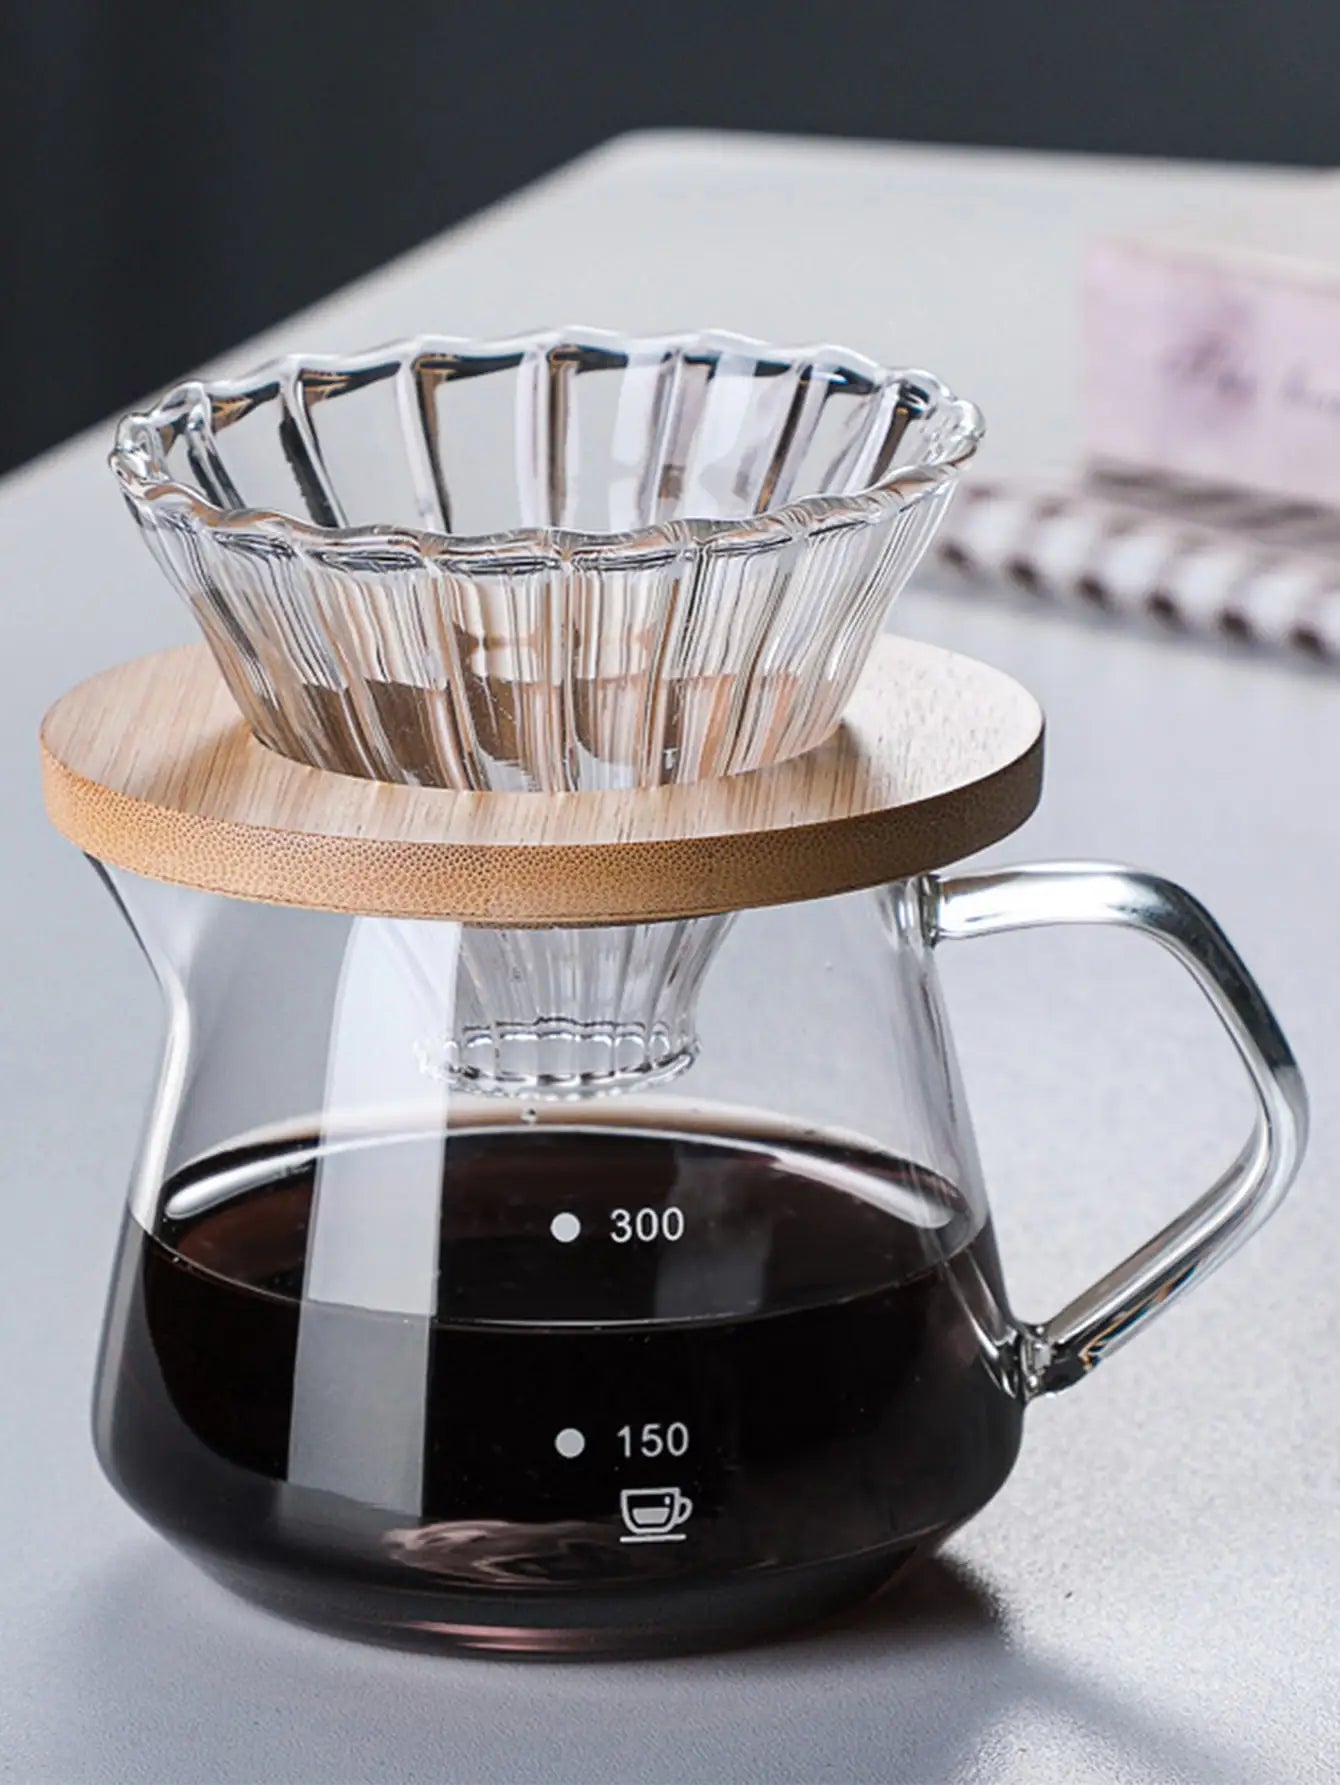 ماكينة صنع القهوة من Leeseph، إبريق قهوة زجاجي مع فلتر قهوة زجاجي، مجموعة ماكينة صنع القهوة بالتنقيط للمنزل أو المكتب، 300 مل